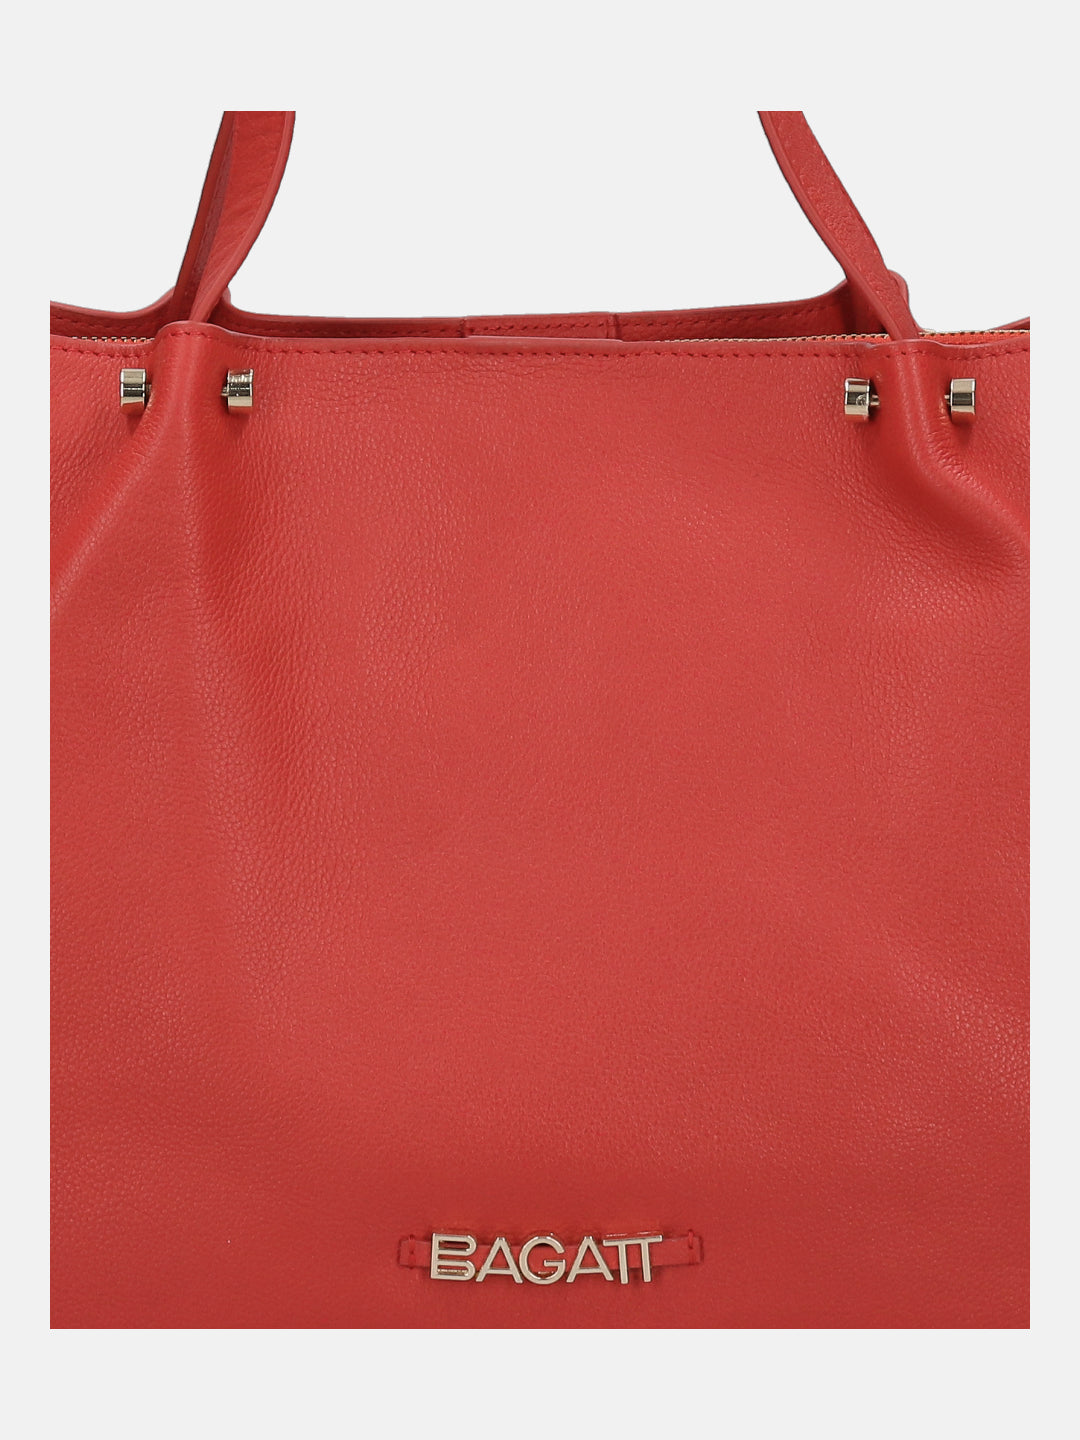 BAGATT Red Tote Bag